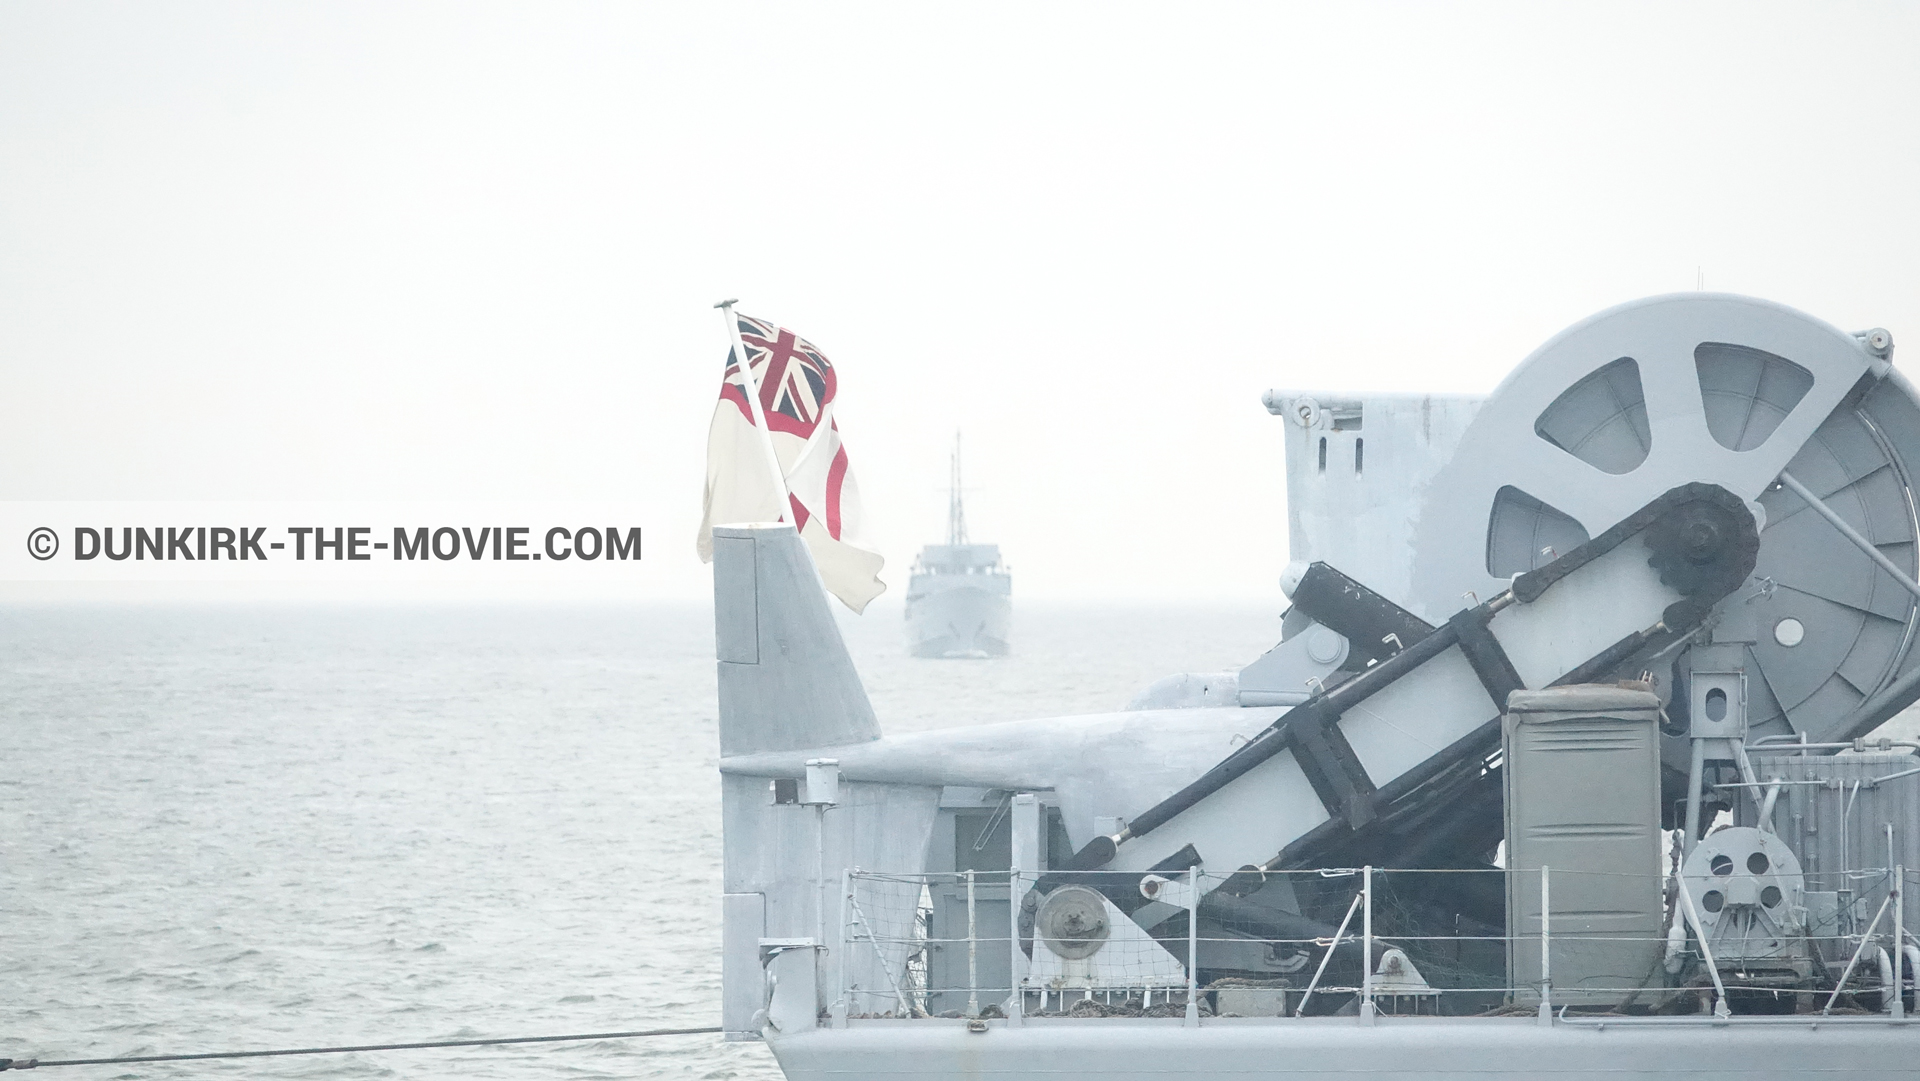 Photo avec mer calme, ciel gris, bateau,  des dessous du Film Dunkerque de Nolan